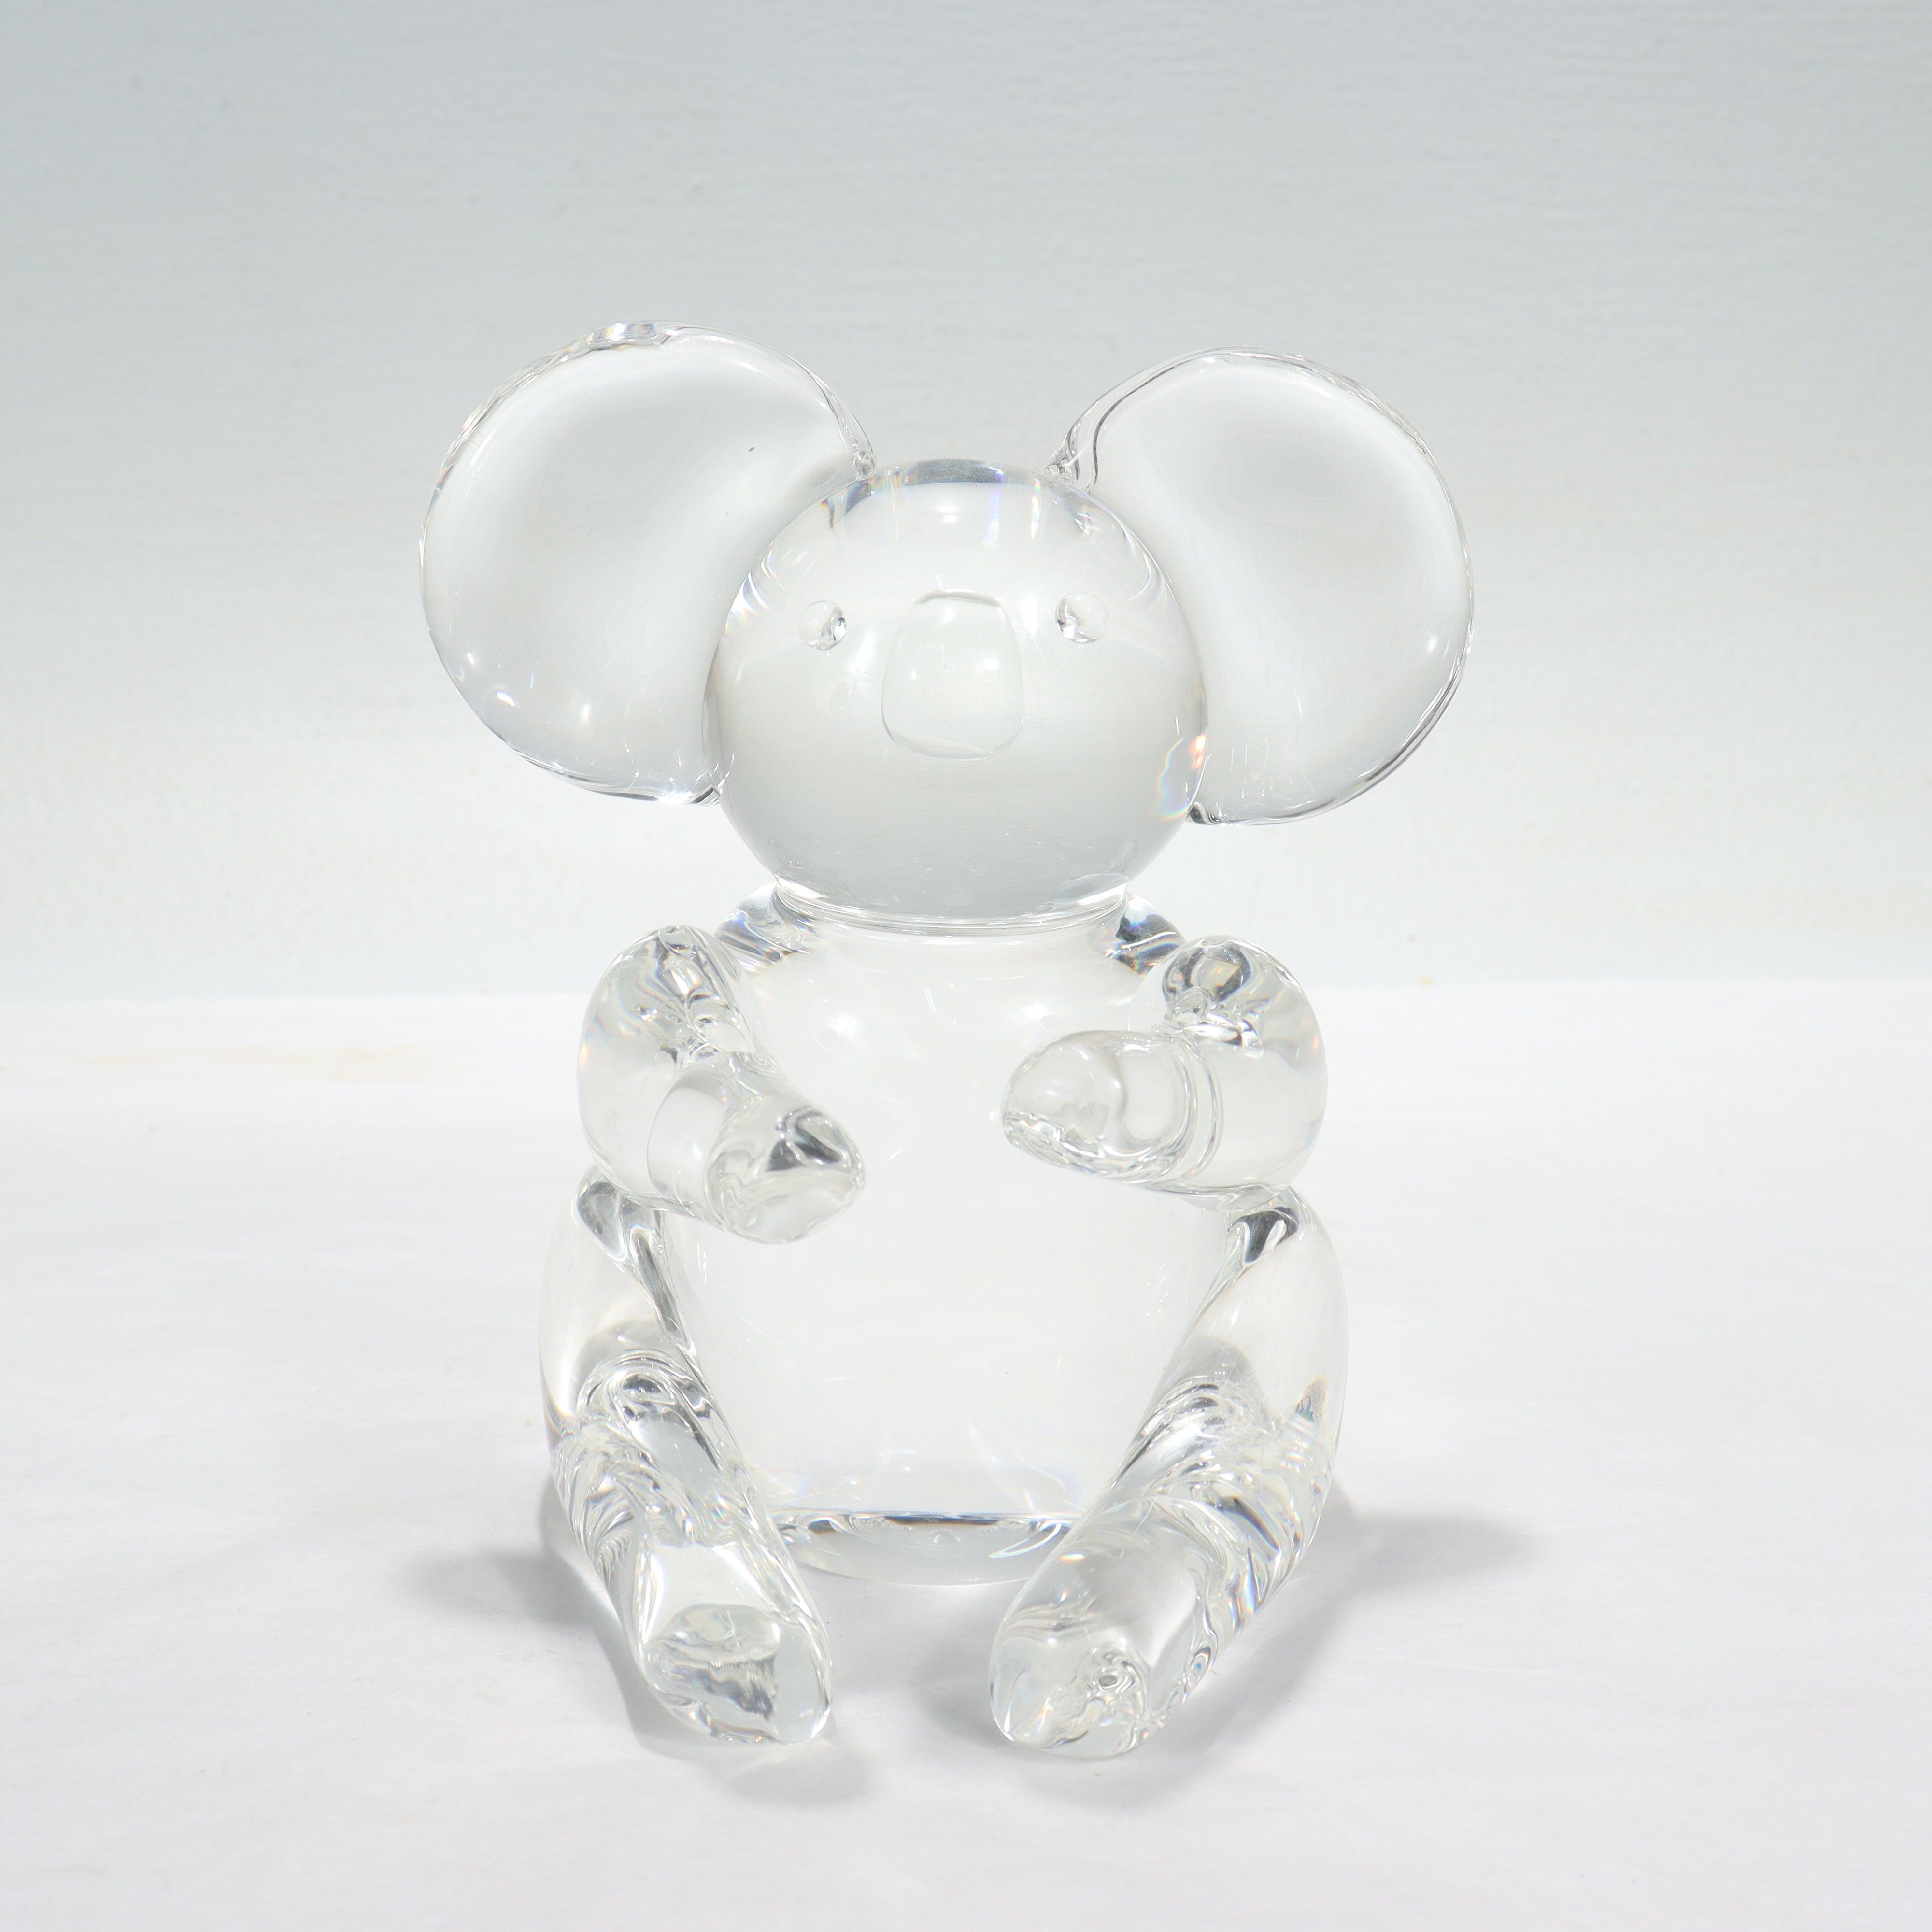 Figurine ou sculpture de l'ours koala en verre d'art.

Par Steuben.

Modèle n°. 8268.

Conçu par Lloyd Atkins.

Tout simplement une merveilleuse figurine de koala de Steuben !

Date :
Milieu du 20e siècle

Condition générale :
Il est en bon état